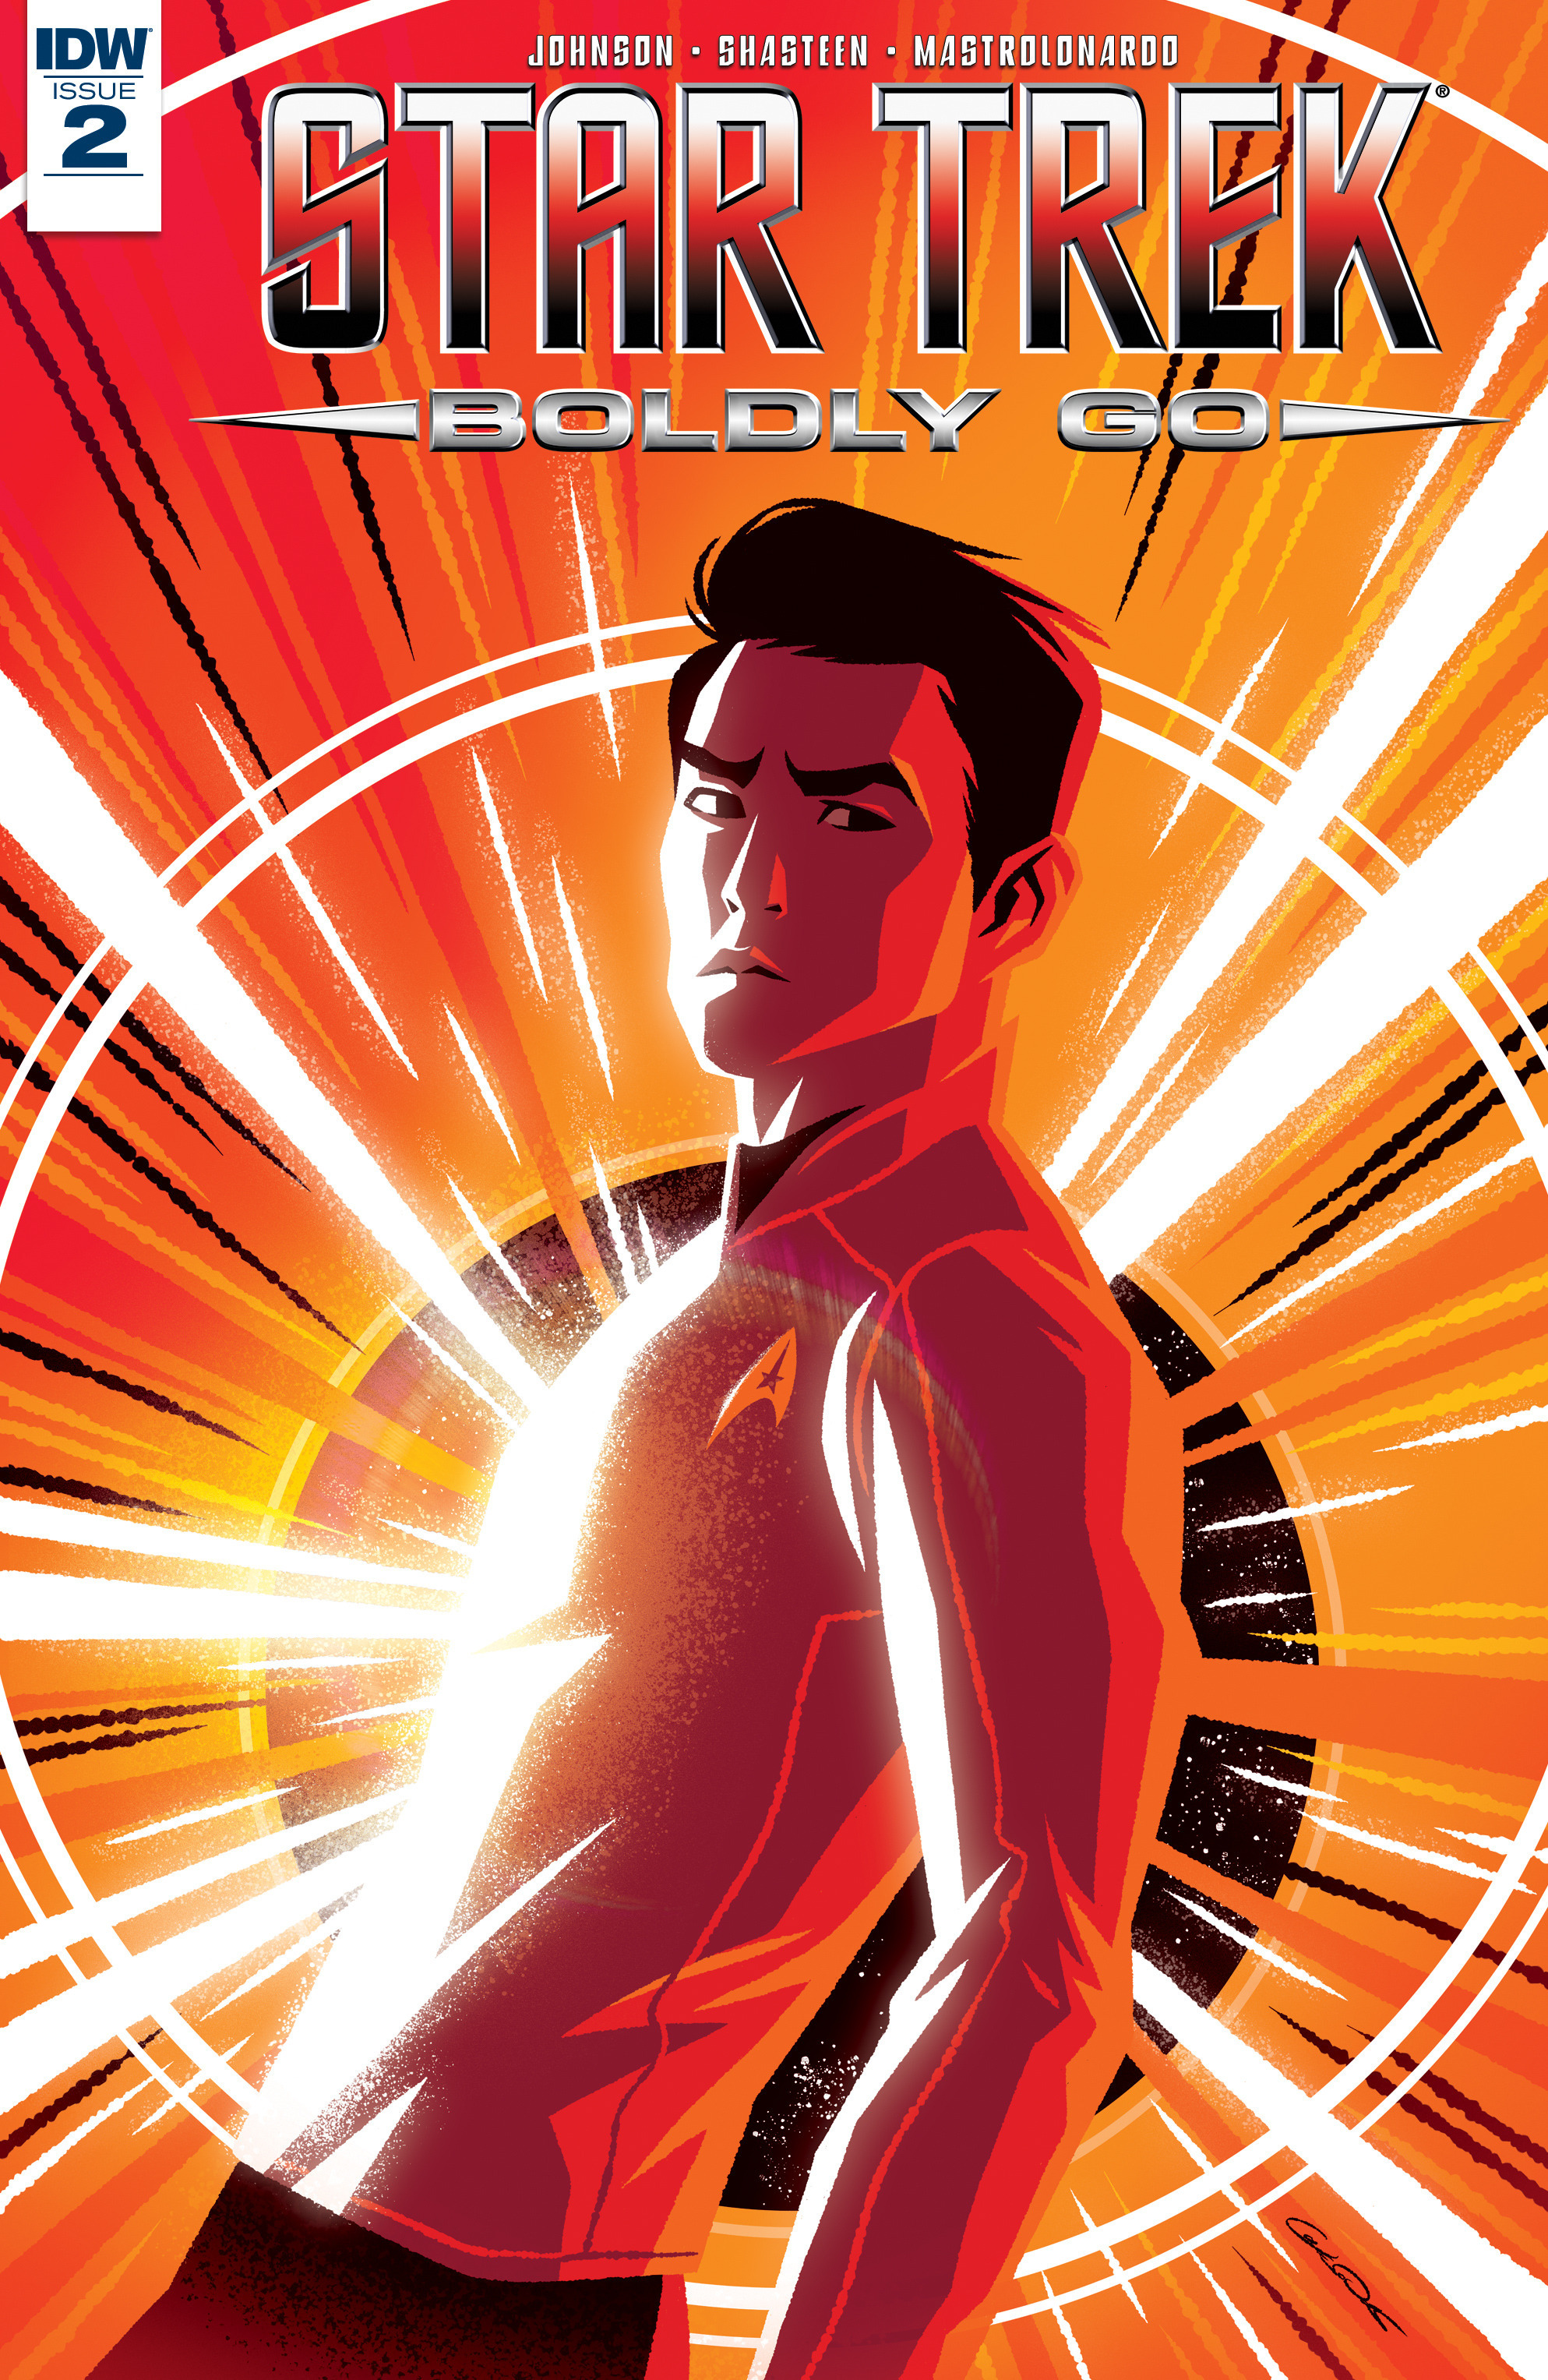 Read online Star Trek: Boldly Go comic -  Issue #2 - 1